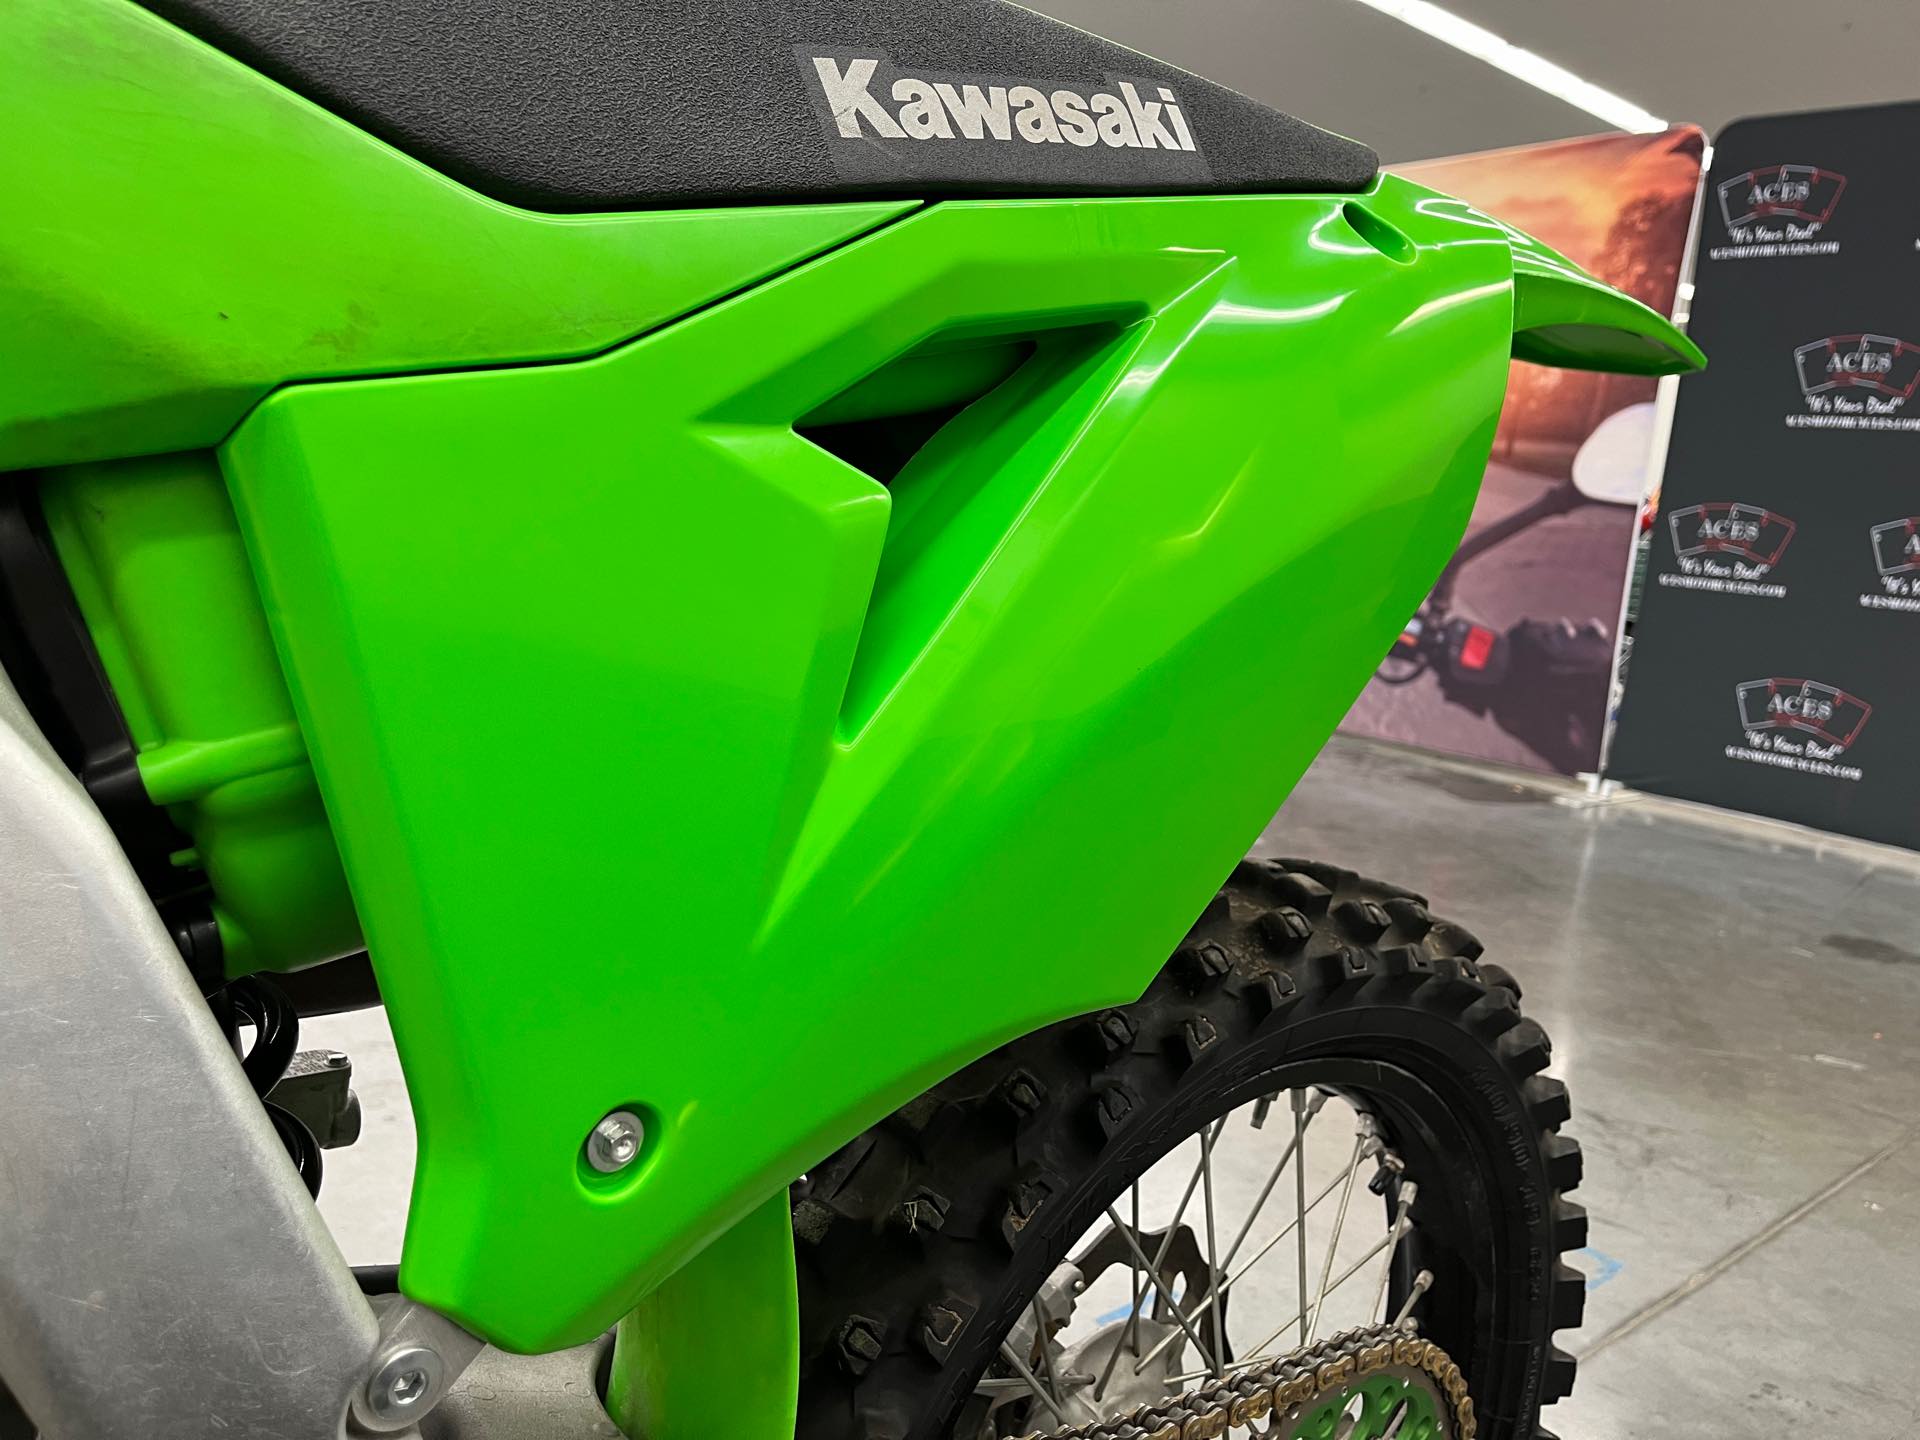 2020 Kawasaki KX 450 at Aces Motorcycles - Denver